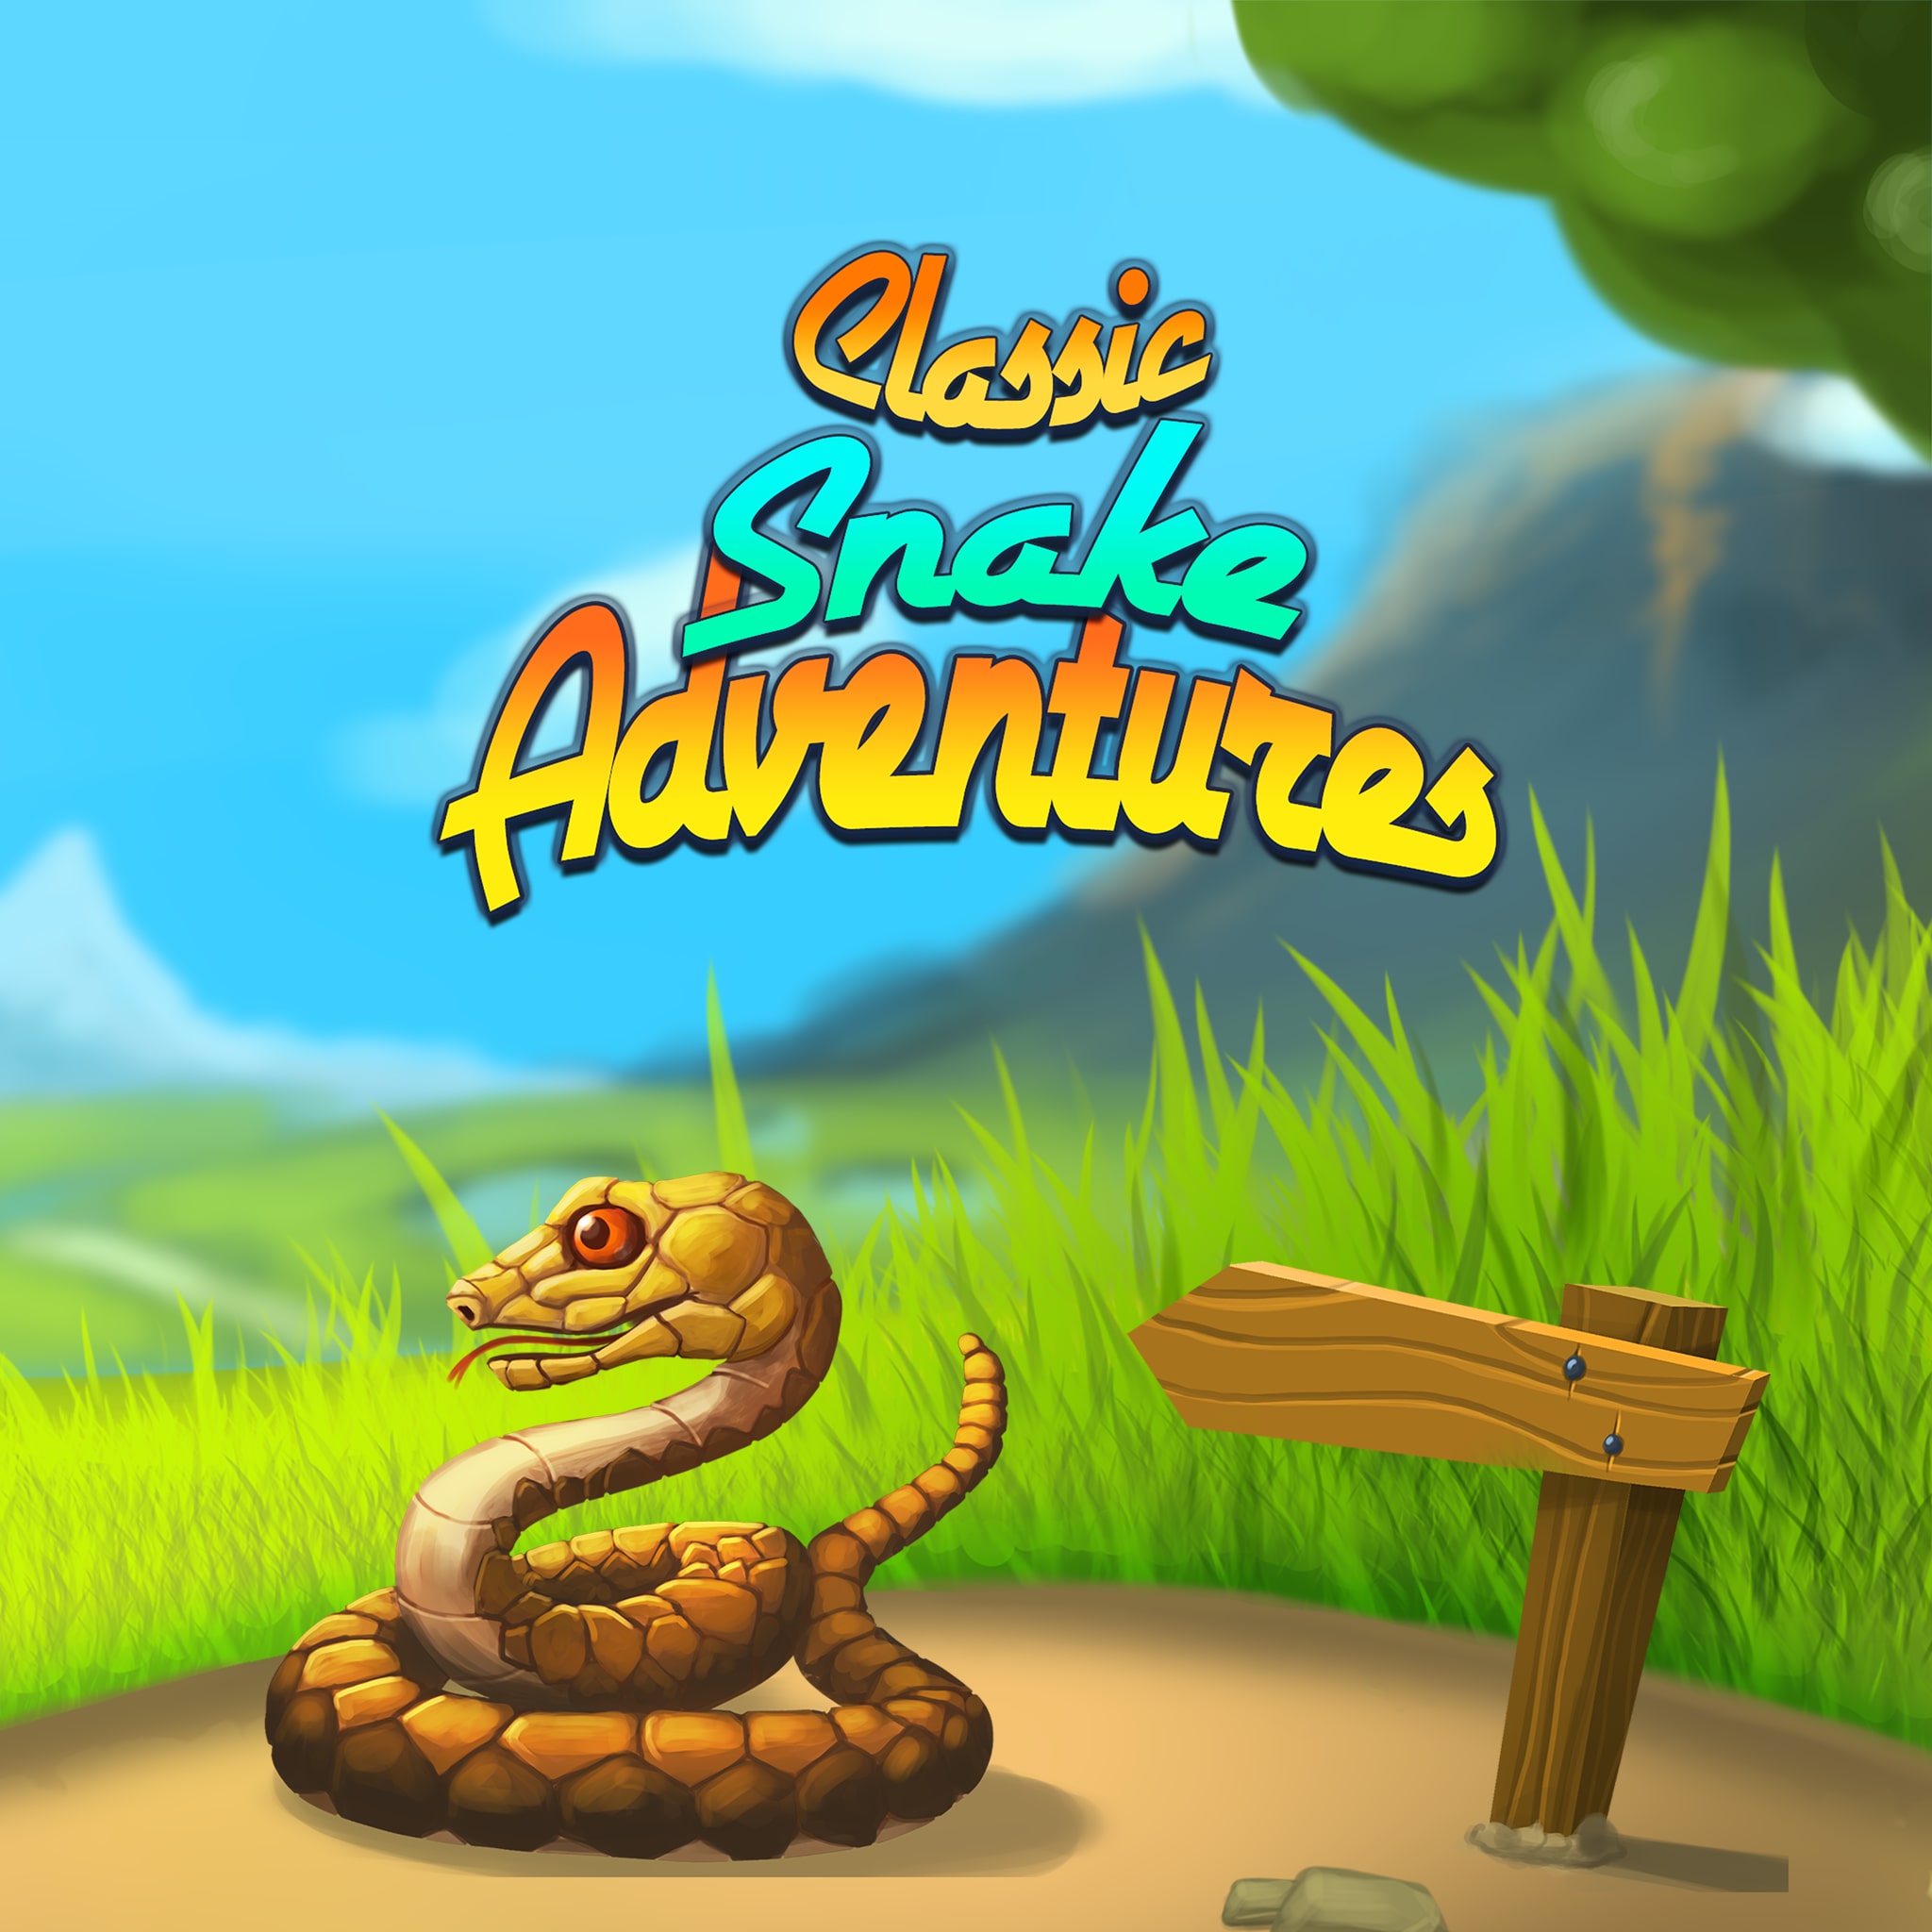 Snake Retro - Serpente Mania - Jogo de cobra clássico  arcade::Appstore for Android